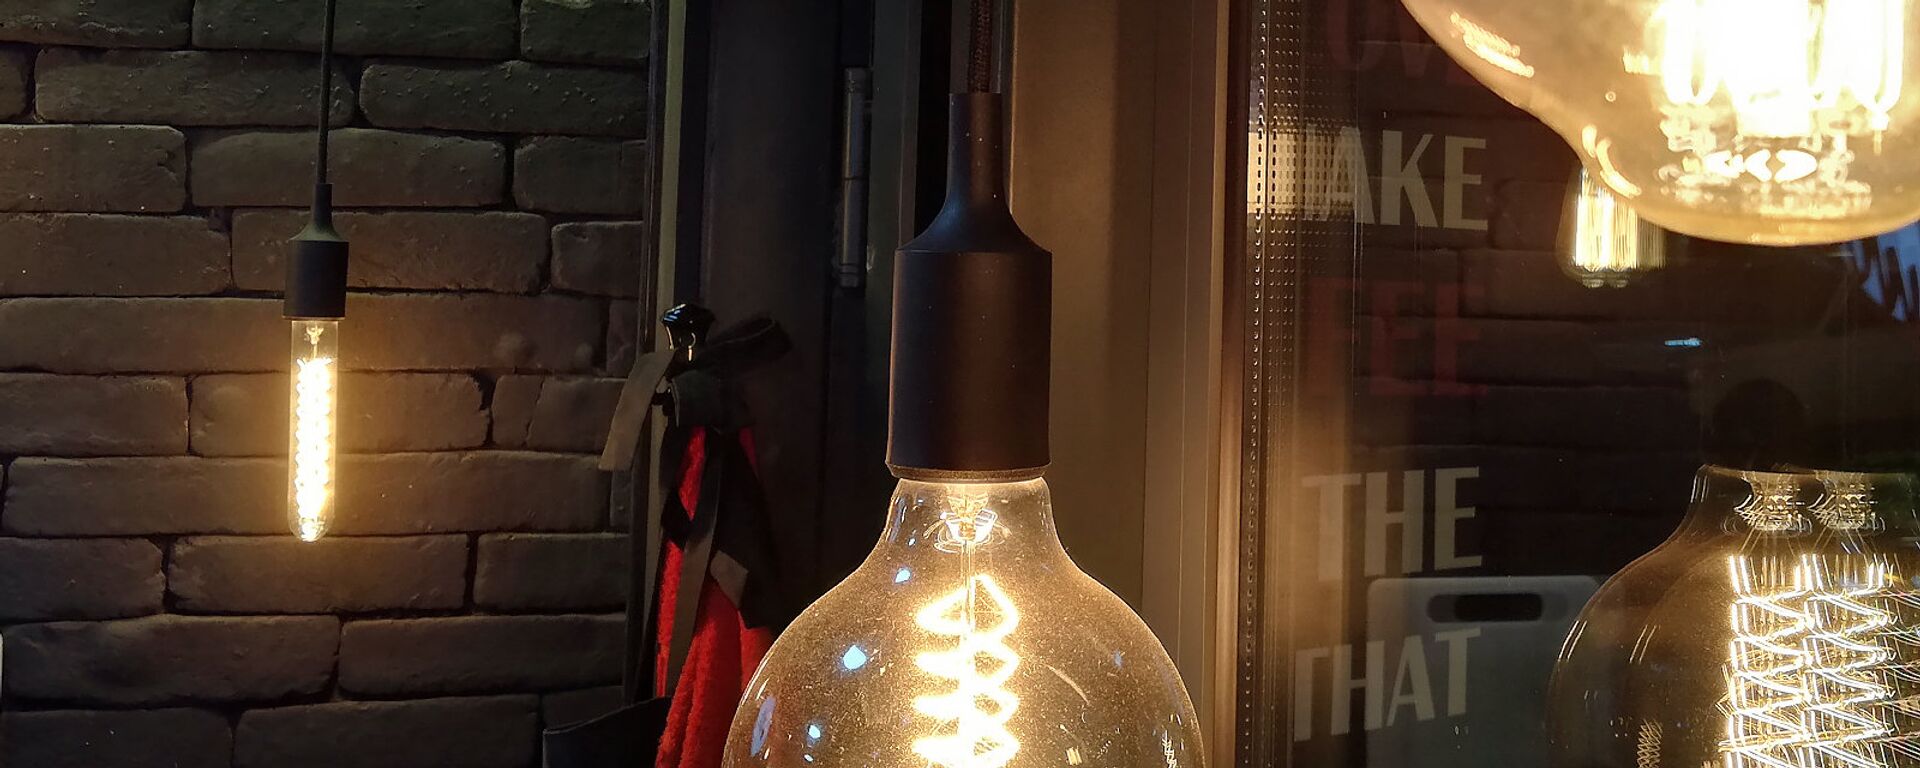 Лампочка накаливания - Sputnik Արմենիա, 1920, 01.05.2021